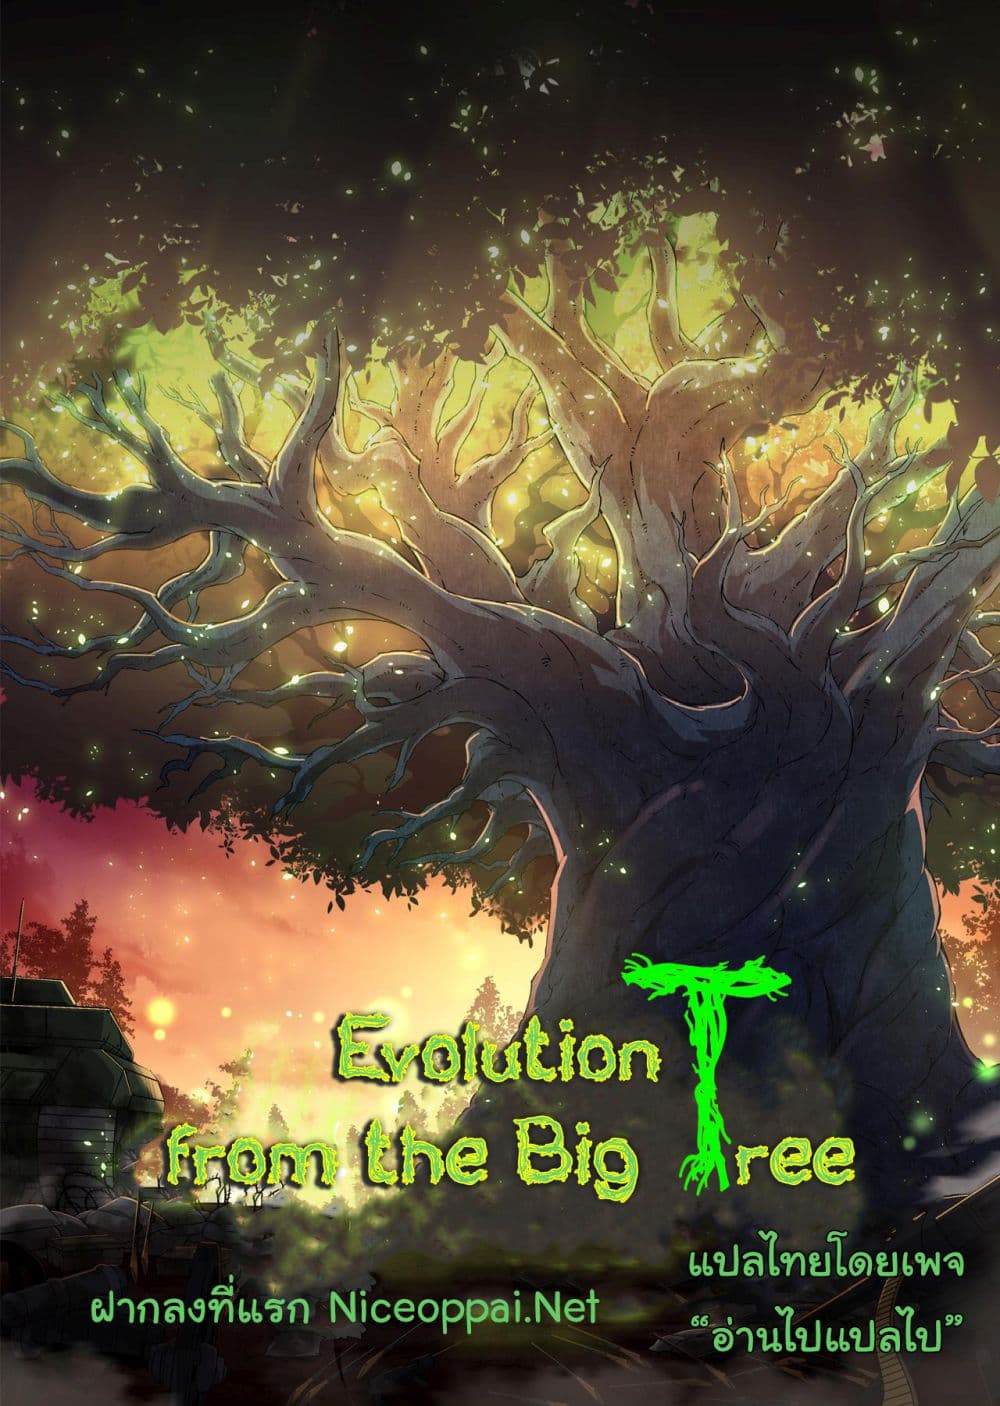 Evolution from the Big Tree Ã Â¸â€¢Ã Â¸Â­Ã Â¸â„¢Ã Â¸â€”Ã Â¸ÂµÃ Â¹Ë† 24 (53)